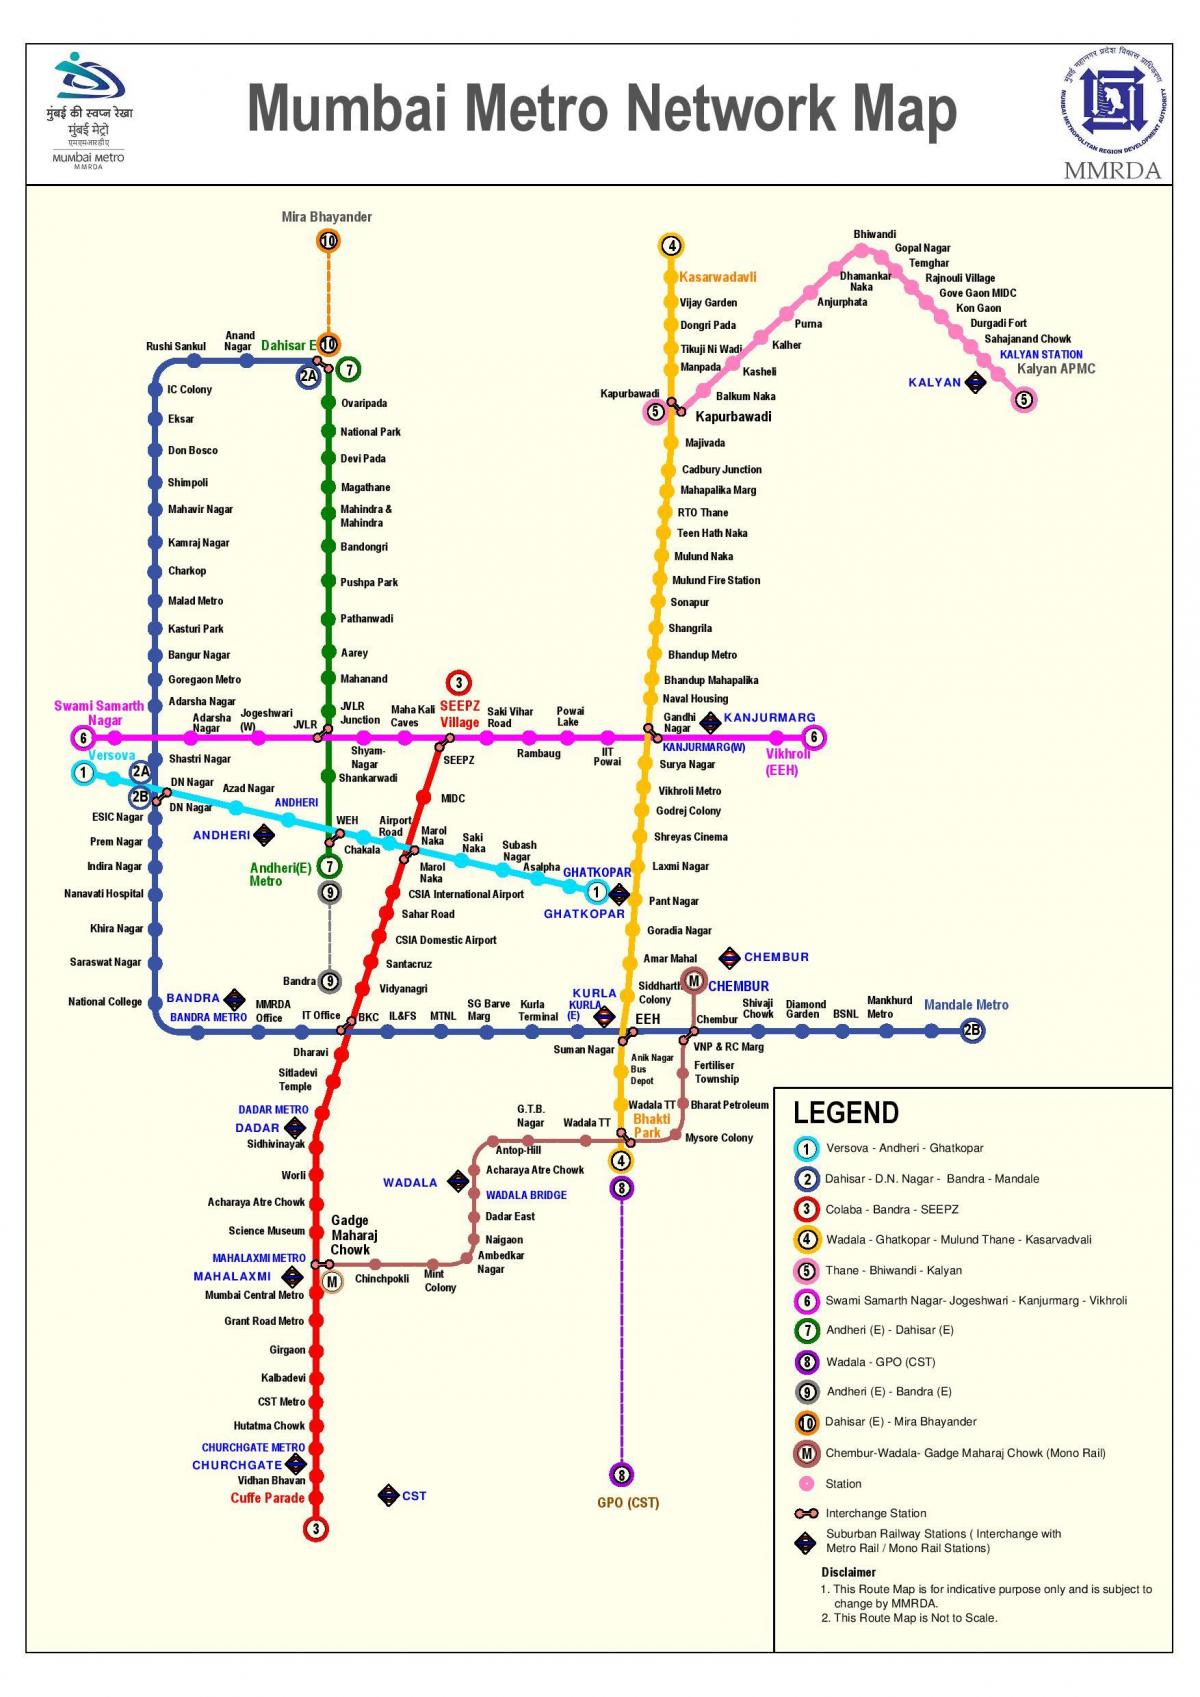 Mumbajus metro maršruto žemėlapį